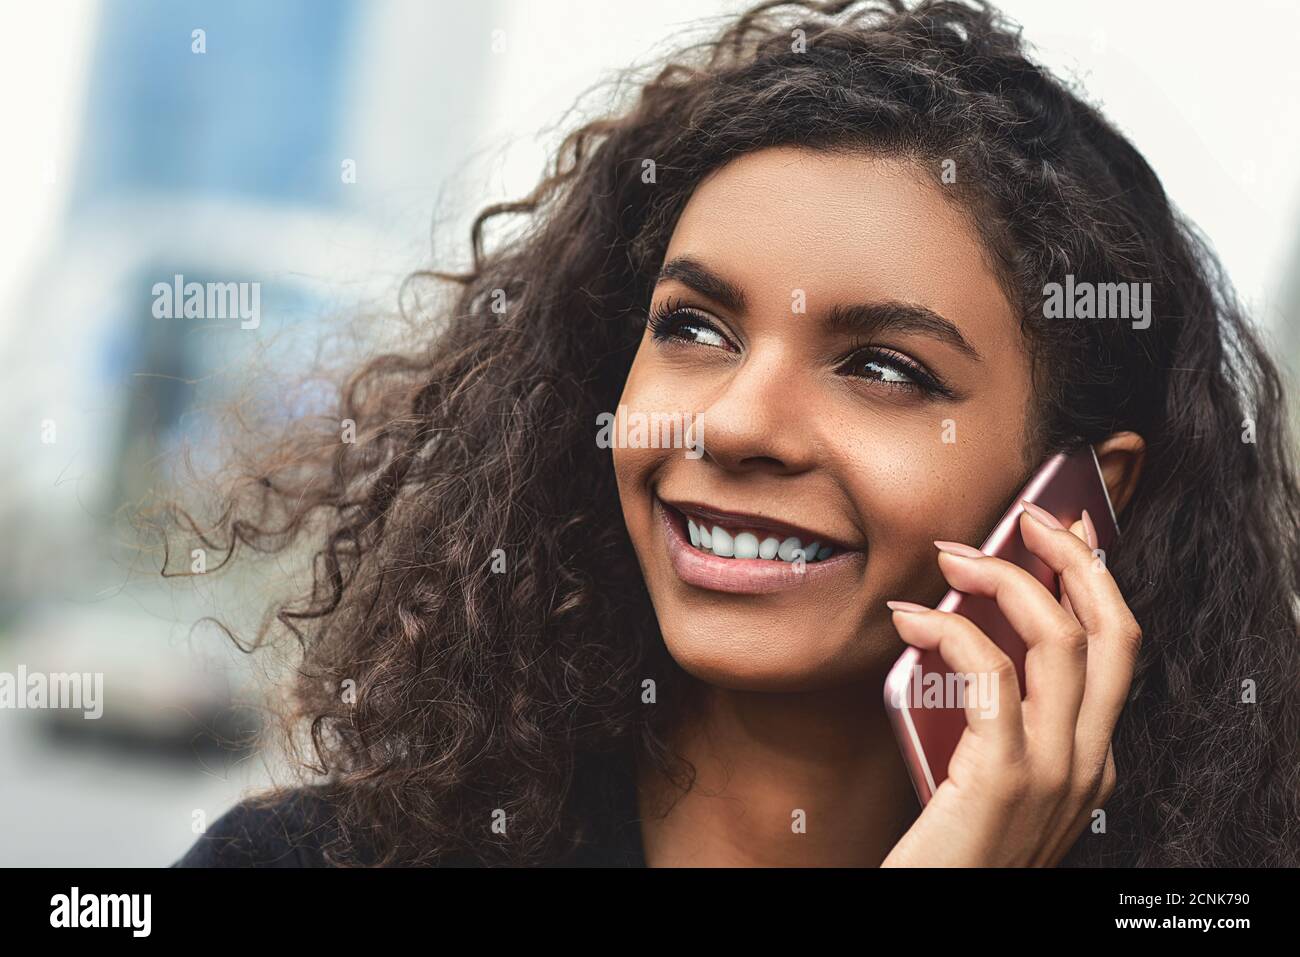 Positive Emotionen. Lifestyle-Konzept. Nahaufnahme der jungen Mischrasse Frau verwenden Sie ein Telefon. Stockfoto